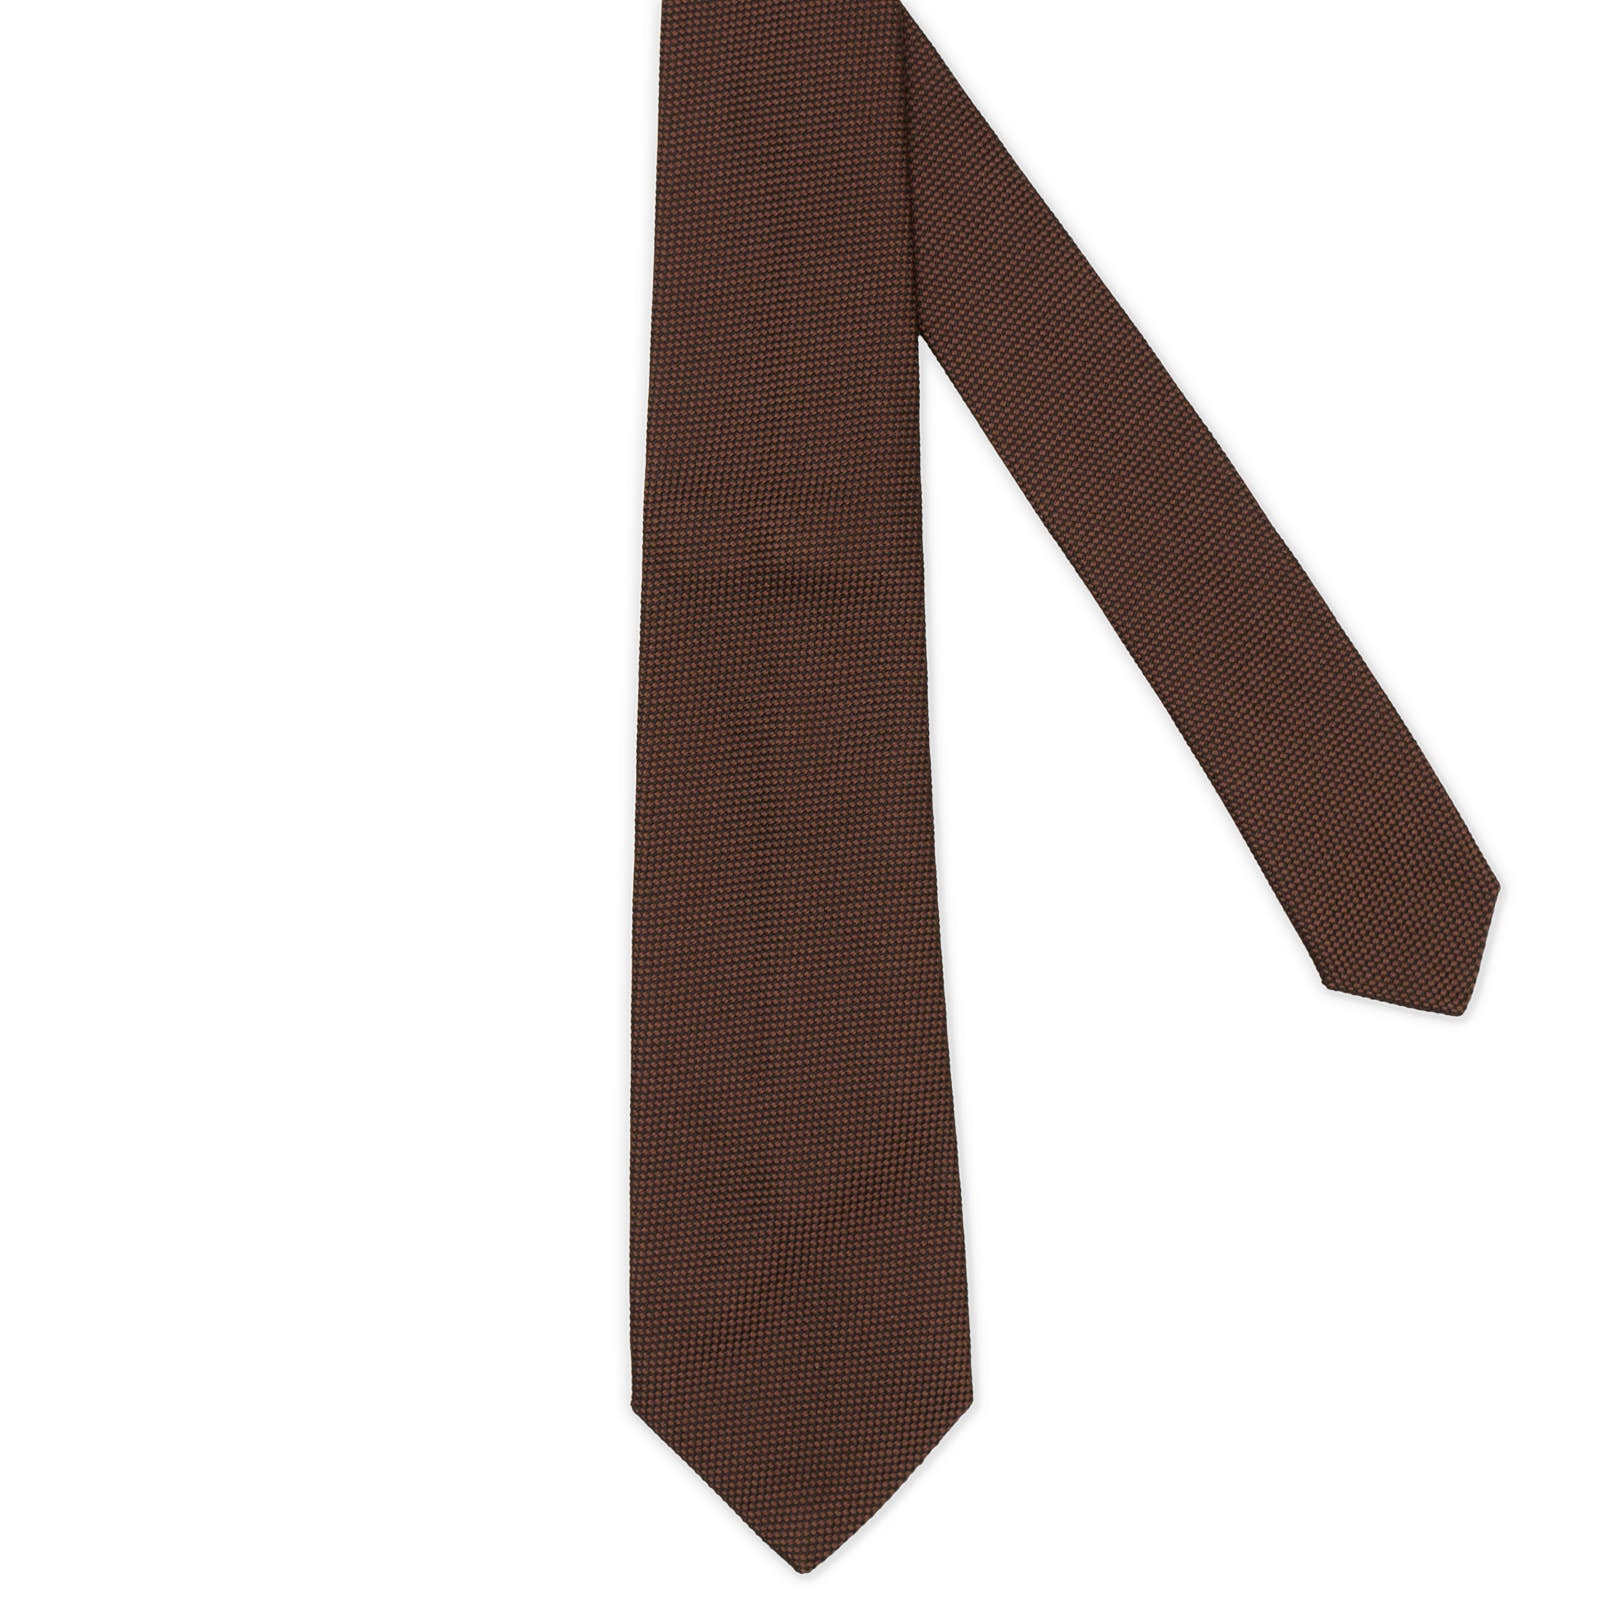 MATTABISCH FOR VANNUCCI Brown Micro Silk Tie NEW